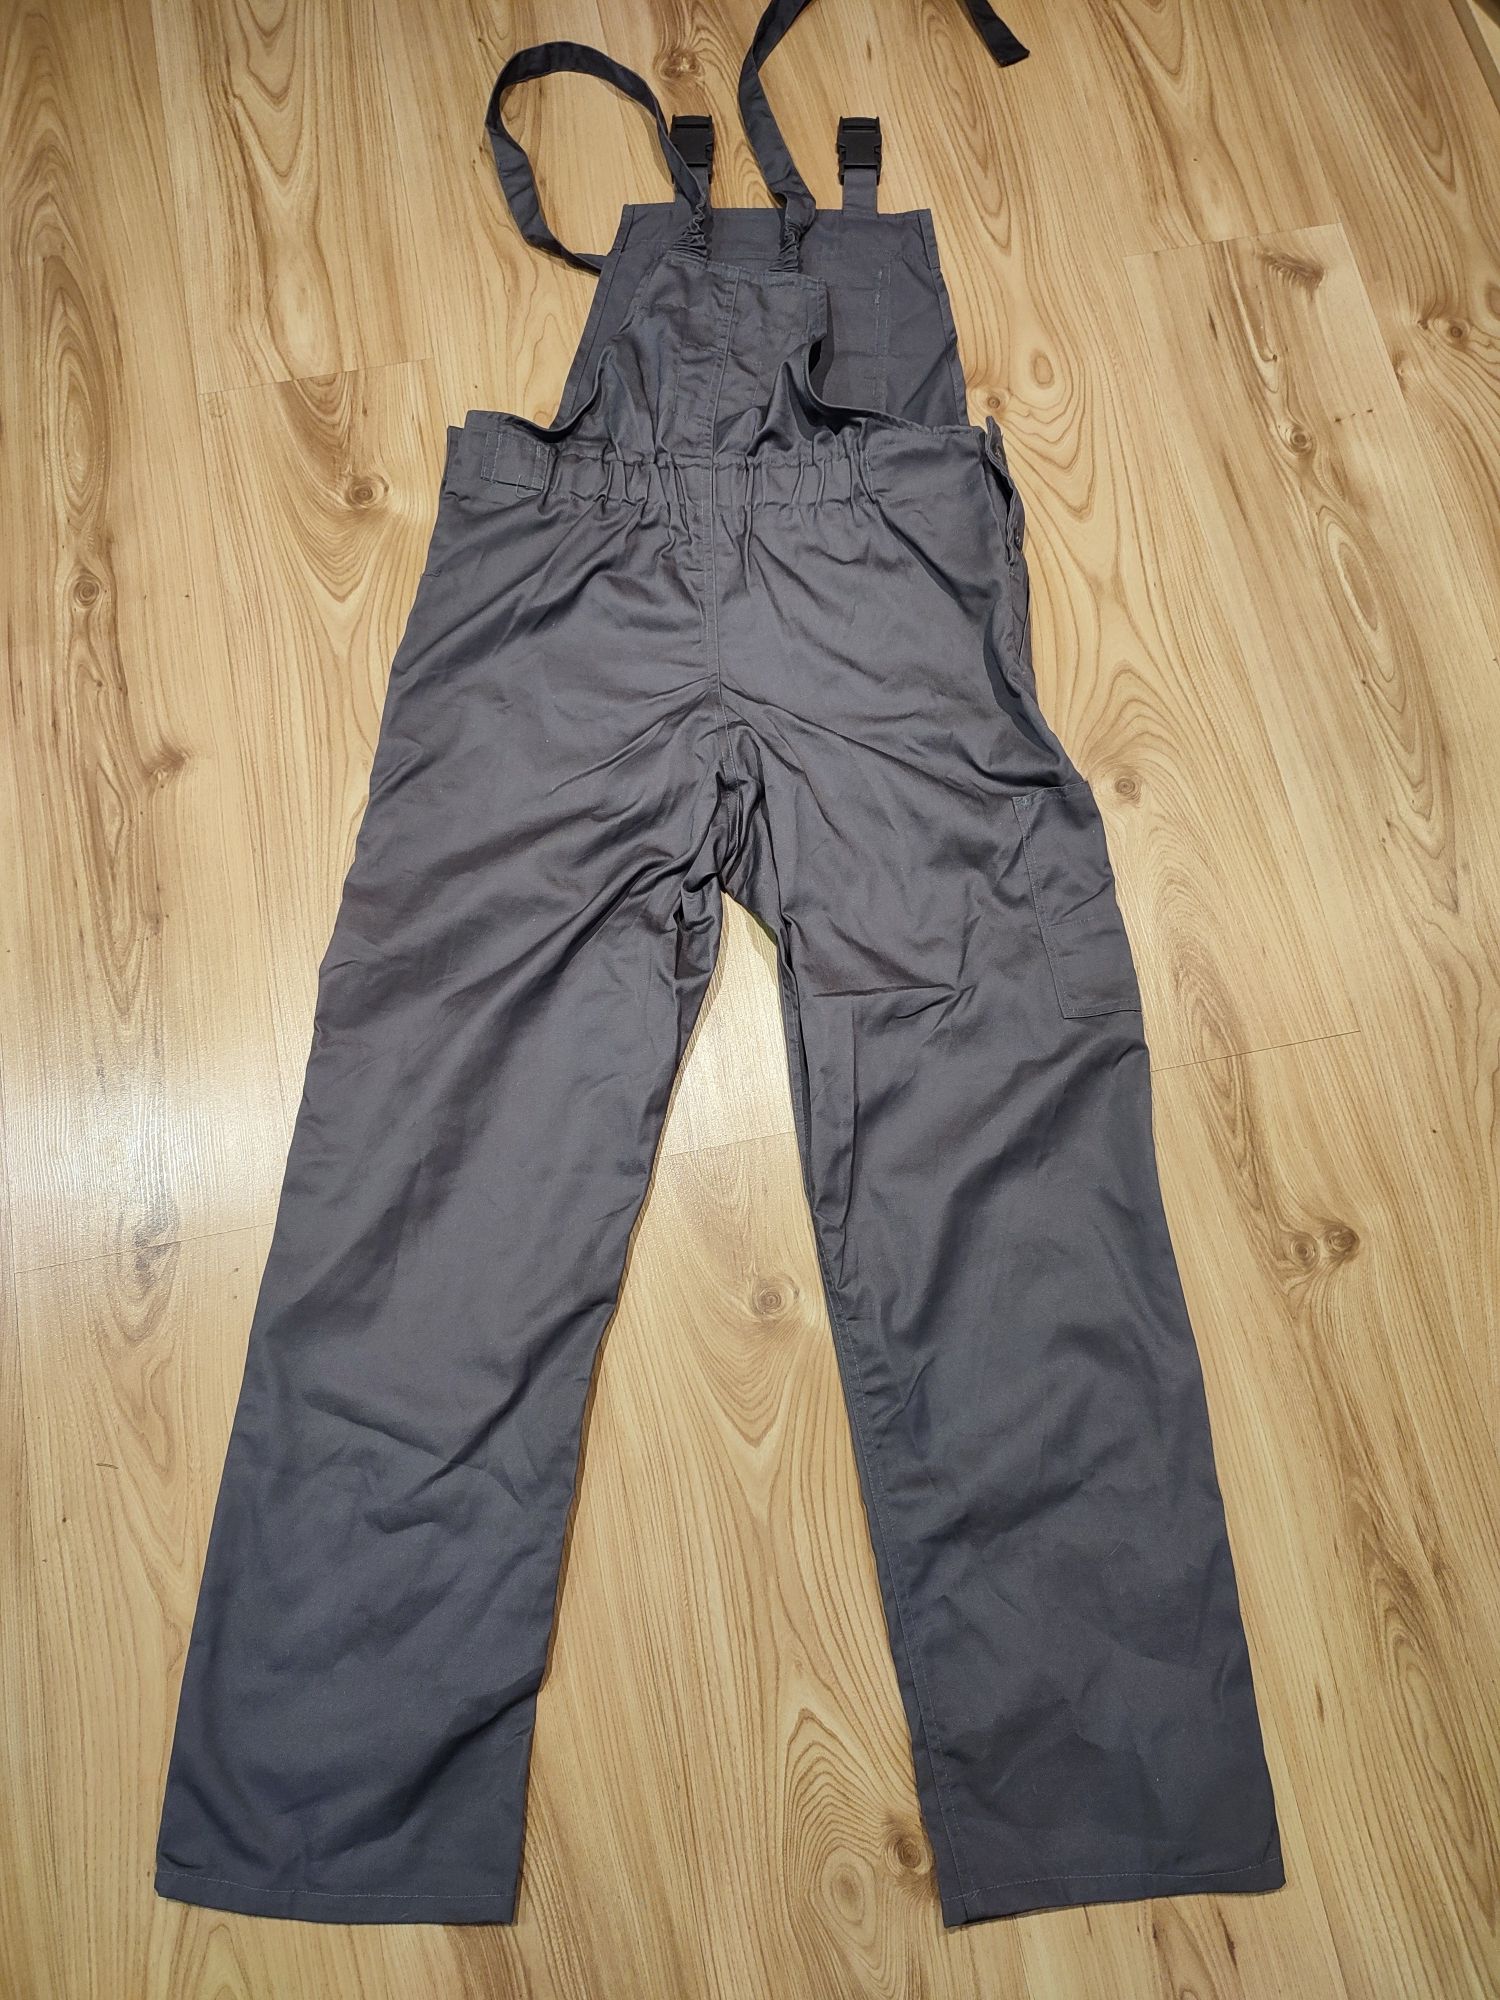 Nowe spodnie robocze REIS, R.176x90, szelki, ogrodniczki